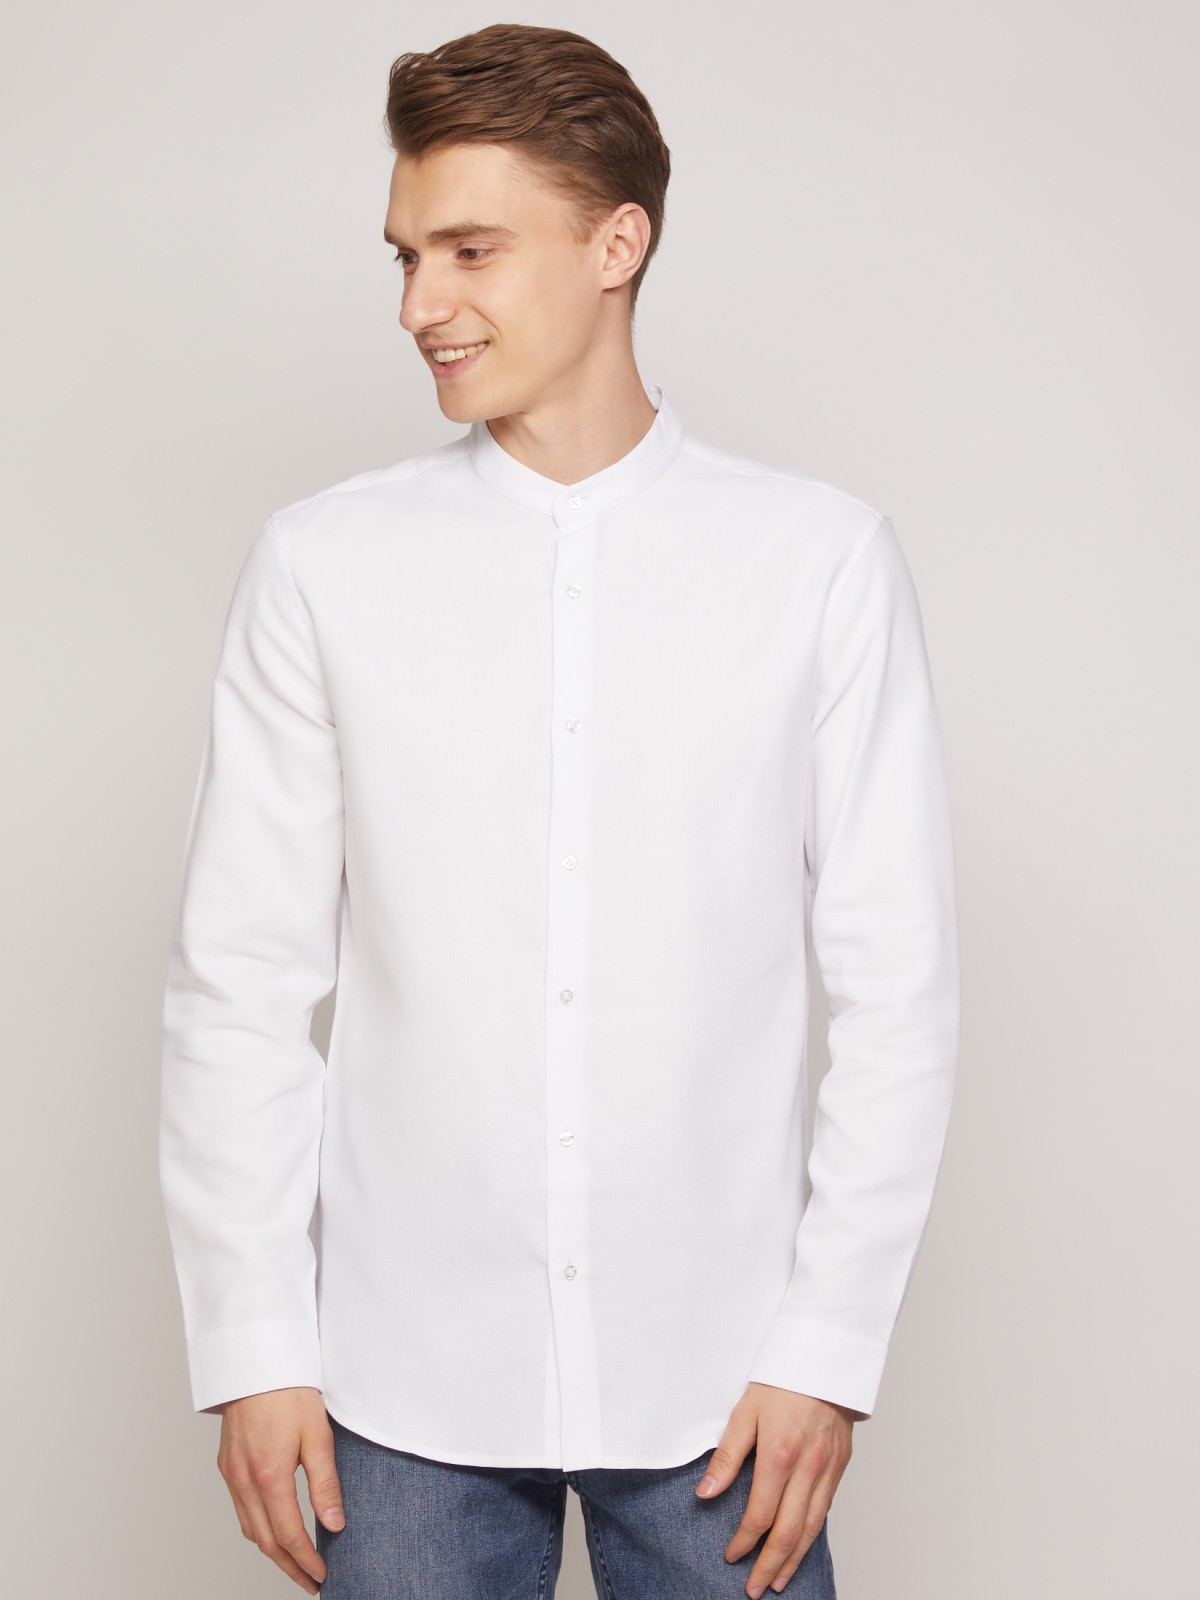 Рубашка с воротником-стойкой zolla 011322159053, цвет белый, размер XS - фото 2